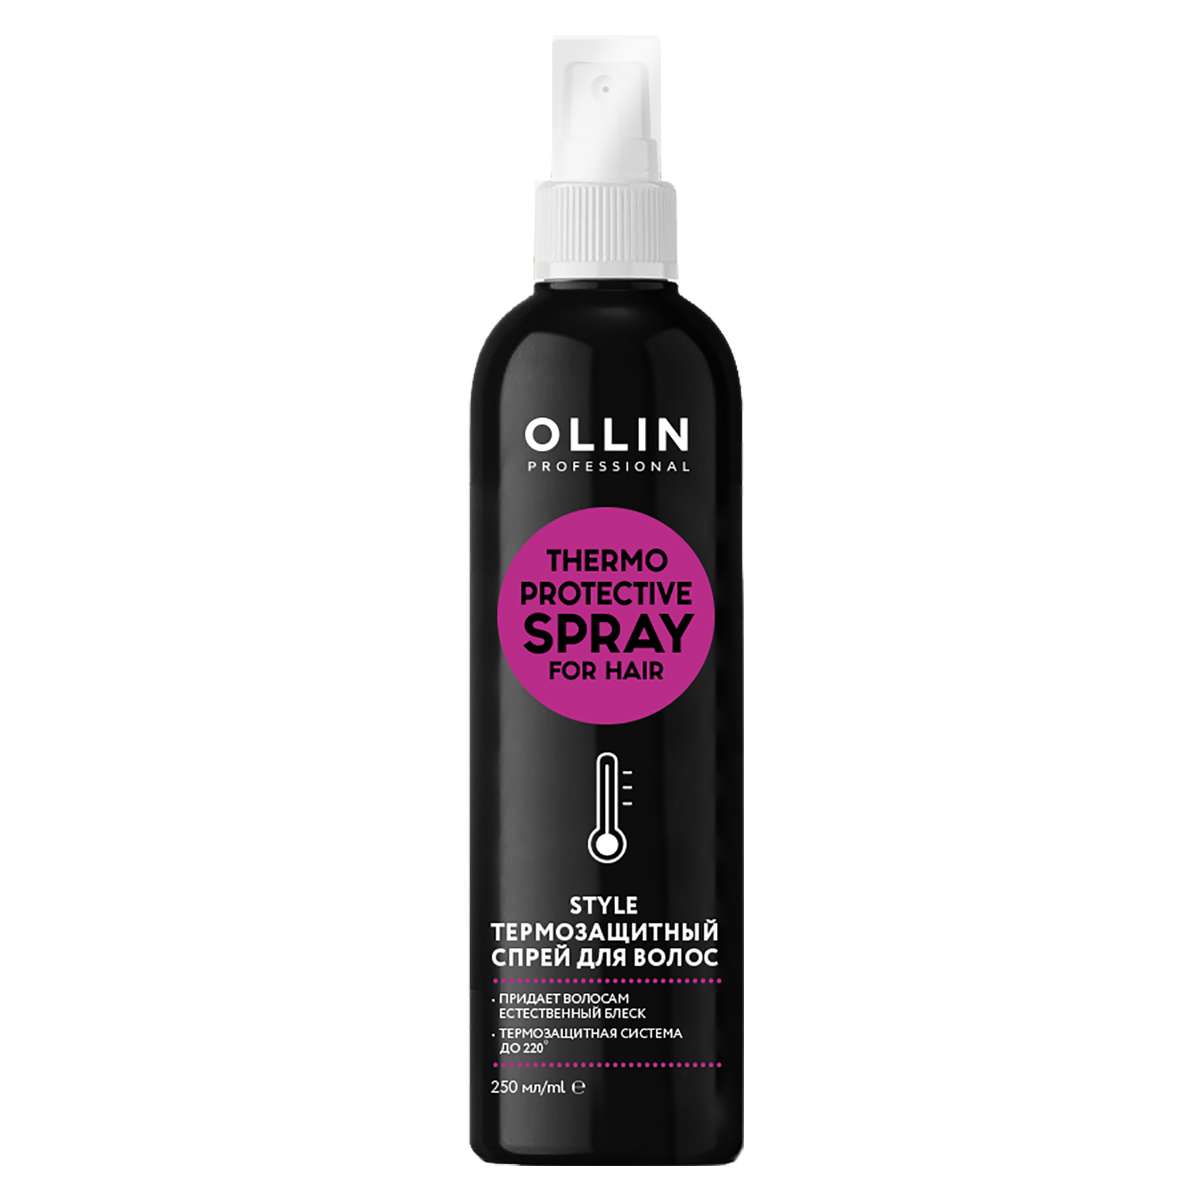 Купить Style Термозащитный спрей для волос, 250 мл, OLLIN, OLLIN Professional